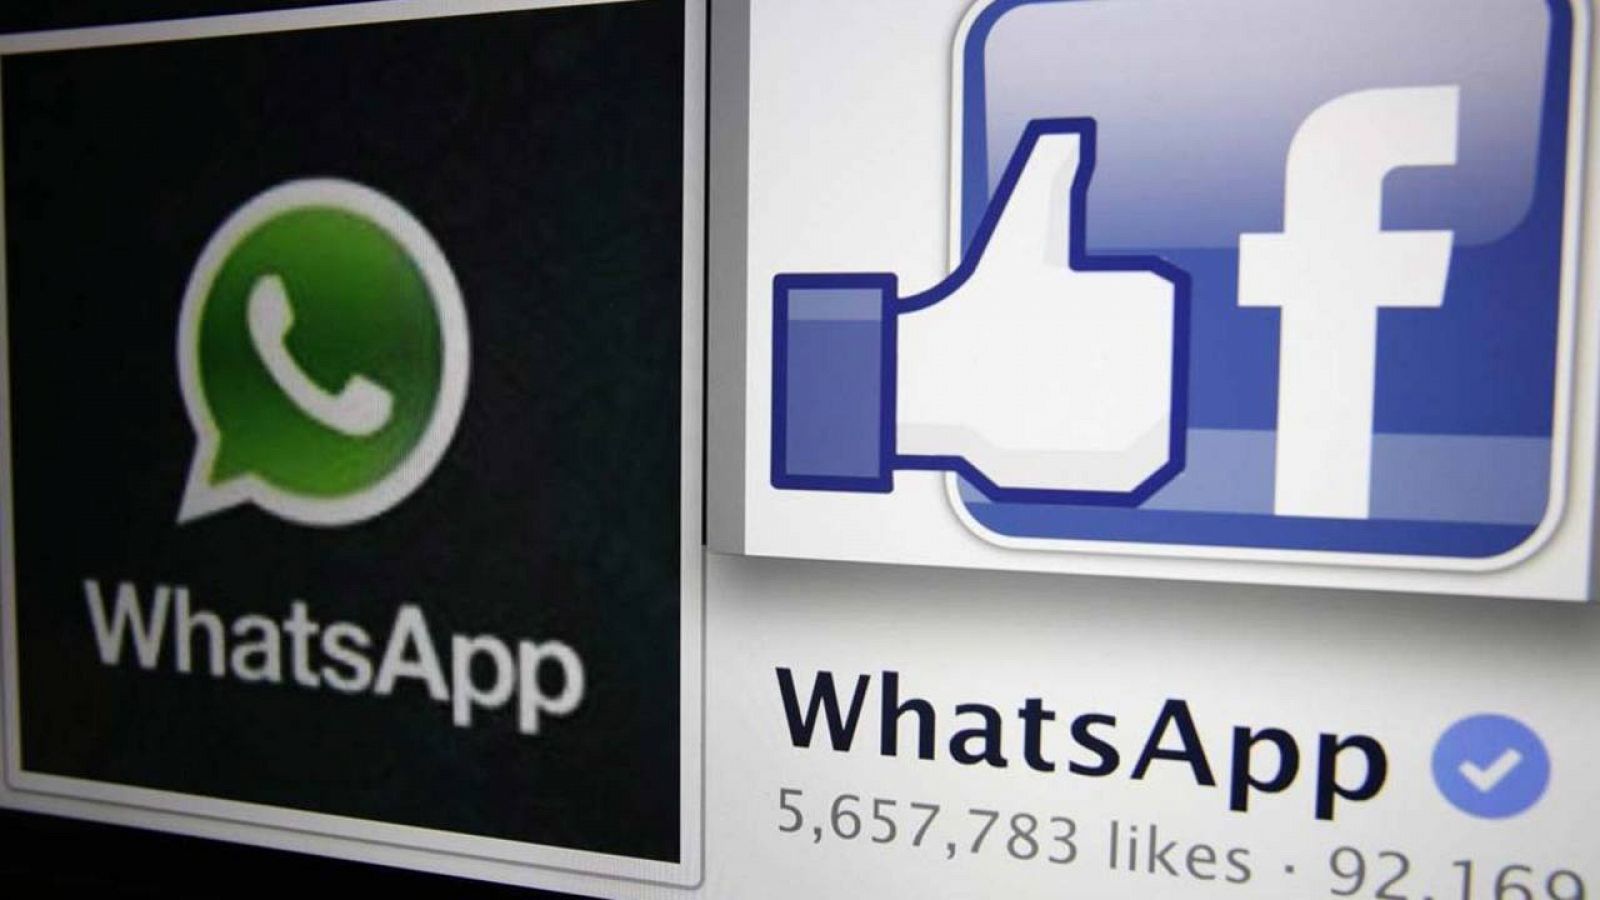 Los logos de WhatsApp y Facebook sobre una pantalla